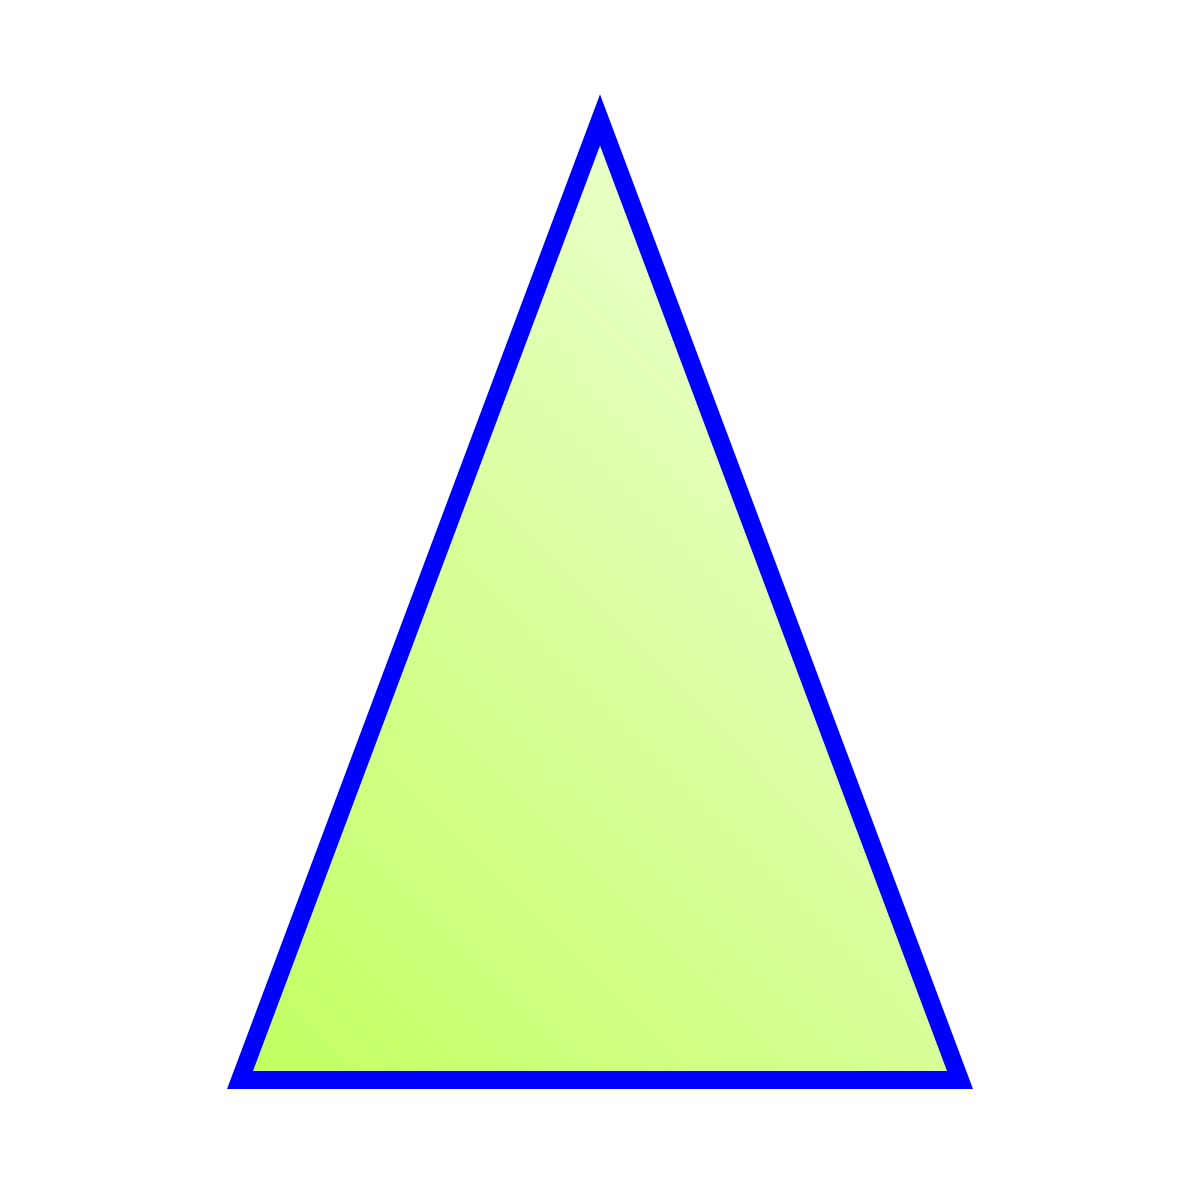 Равнобедренный треугольник треугольник. Равнобедренный треугольник фигура. Треугольник картинка. Треугольник картинка для детей. Равнобедренный треугольник символ